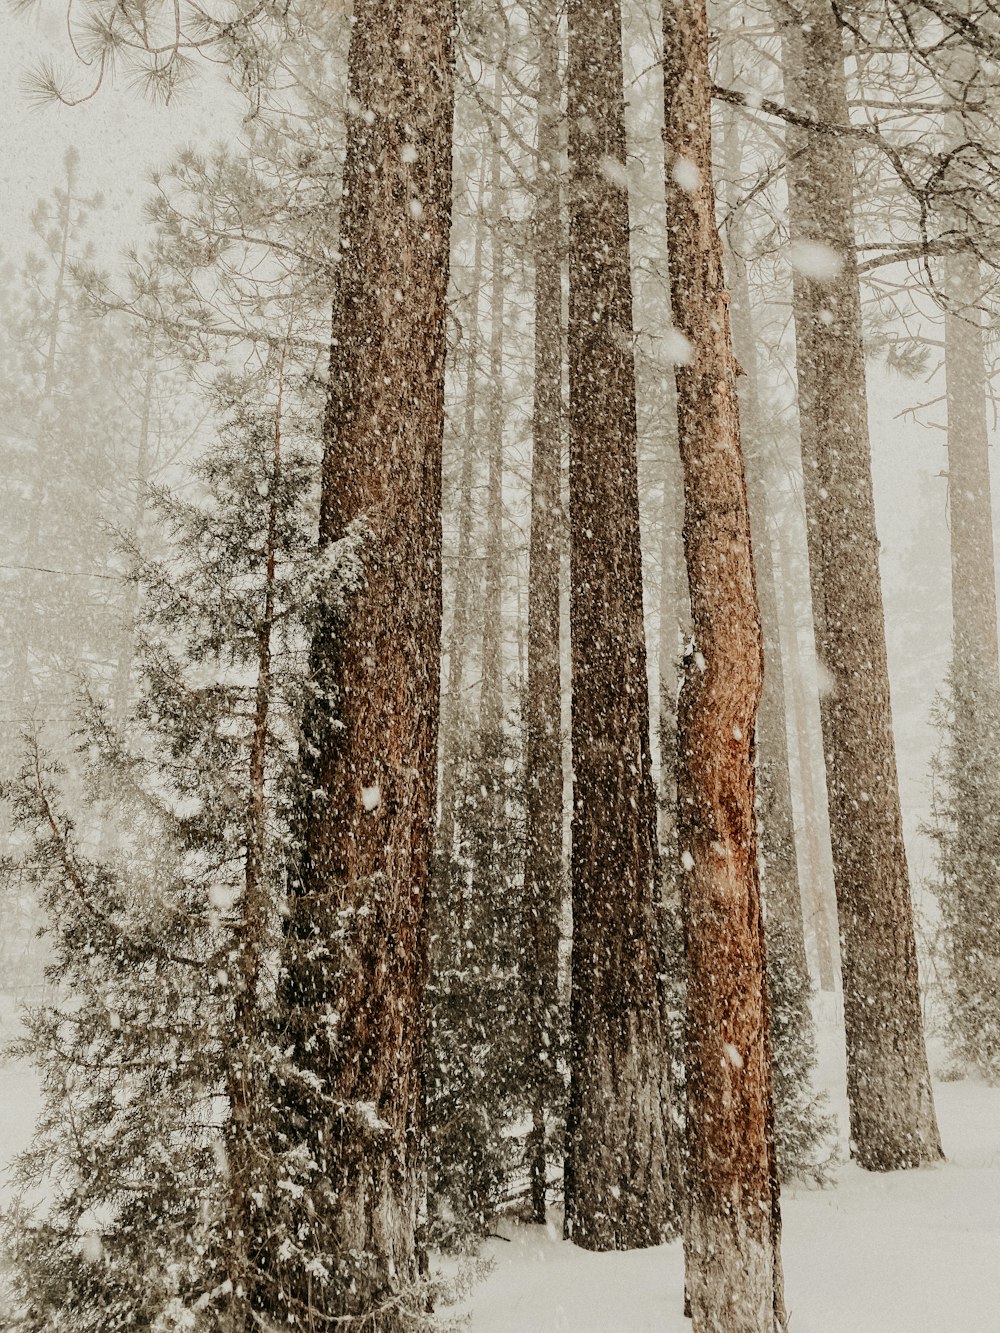 Ein schneebedeckter Wald mit vielen hohen Bäumen